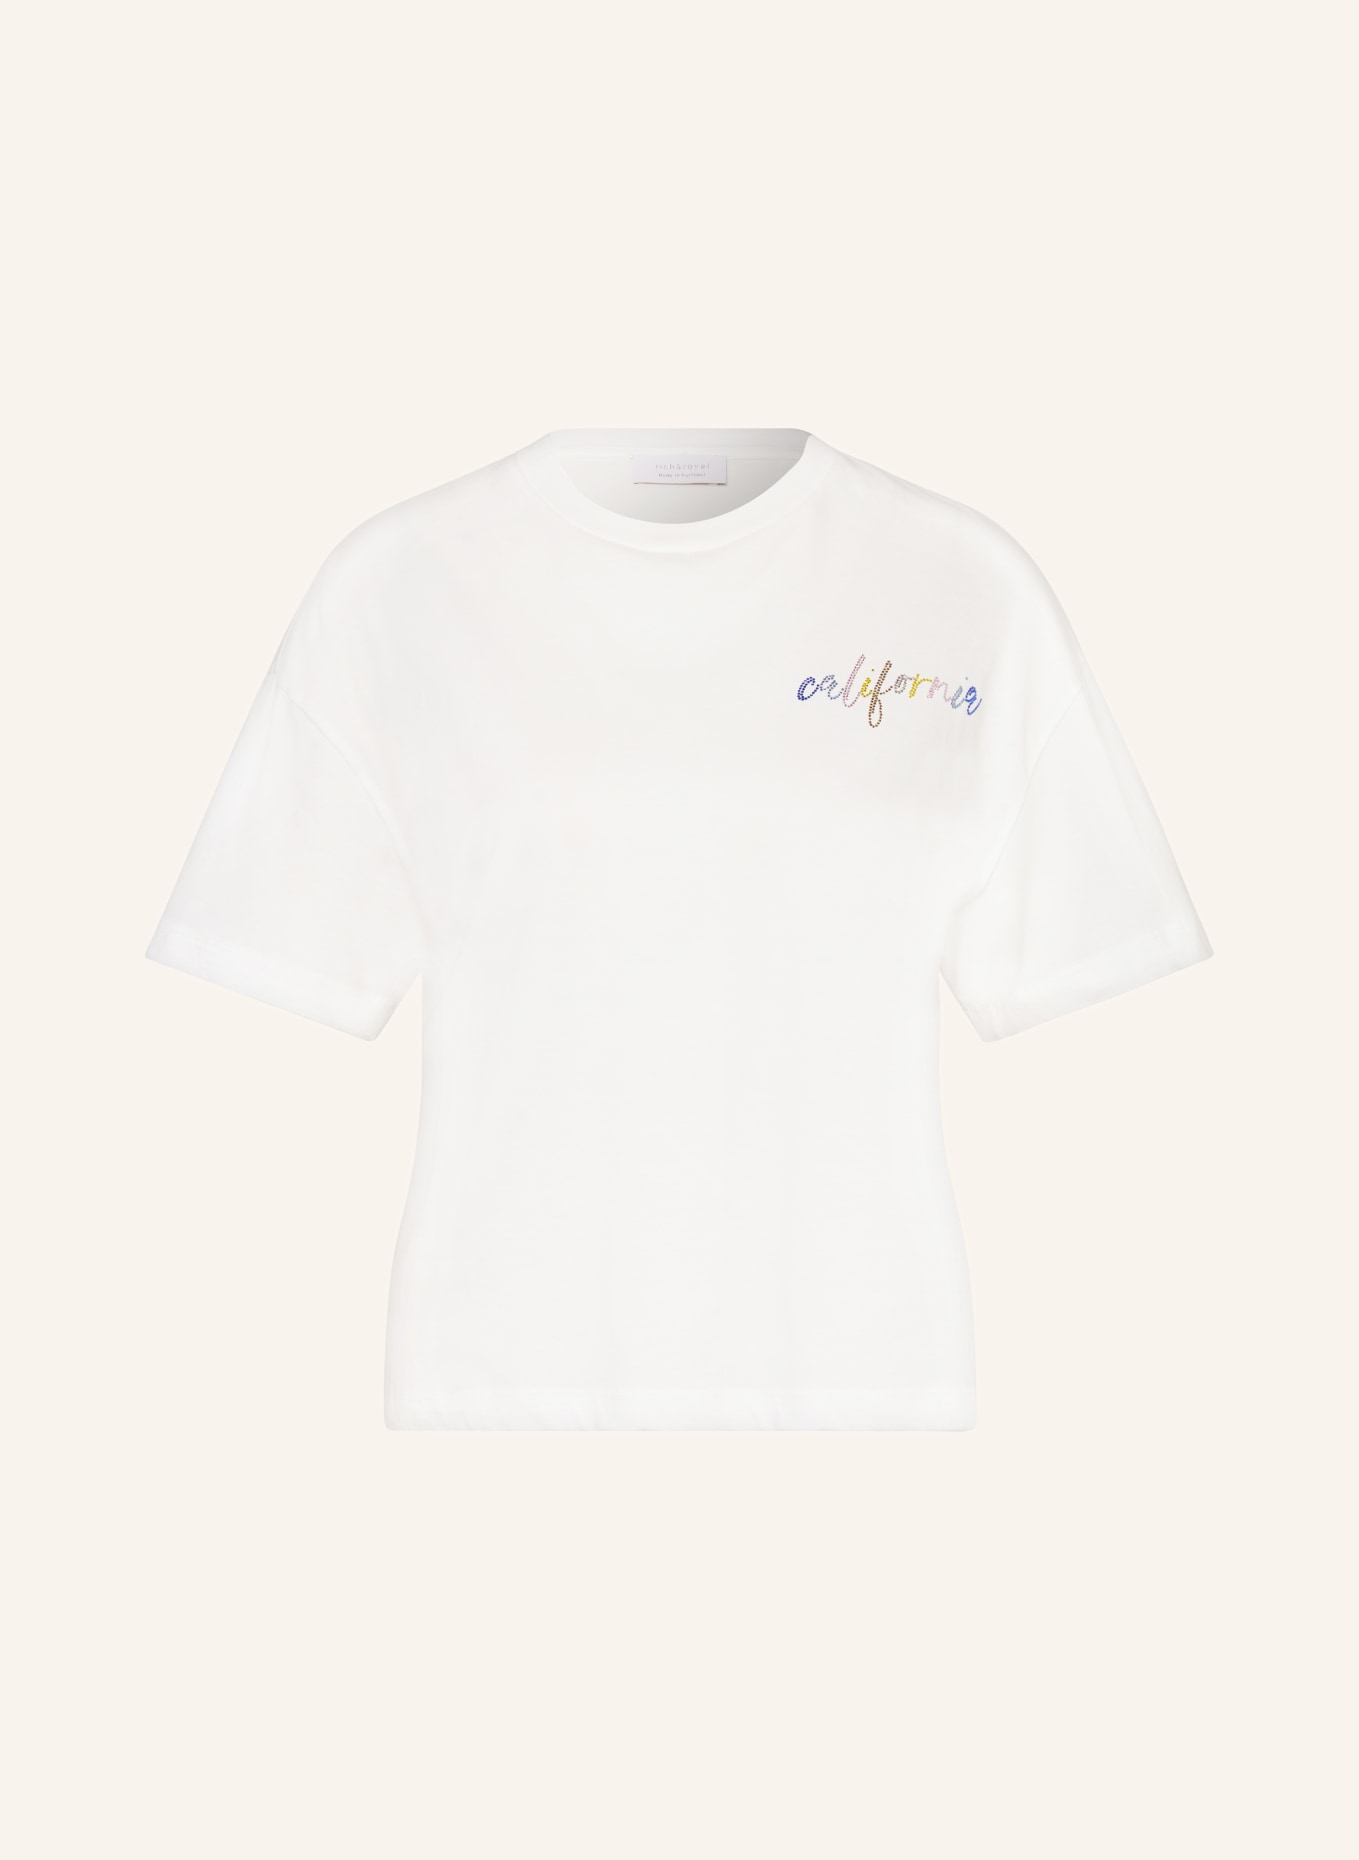 rich&royal T-shirt, Color: WHITE (Image 1)